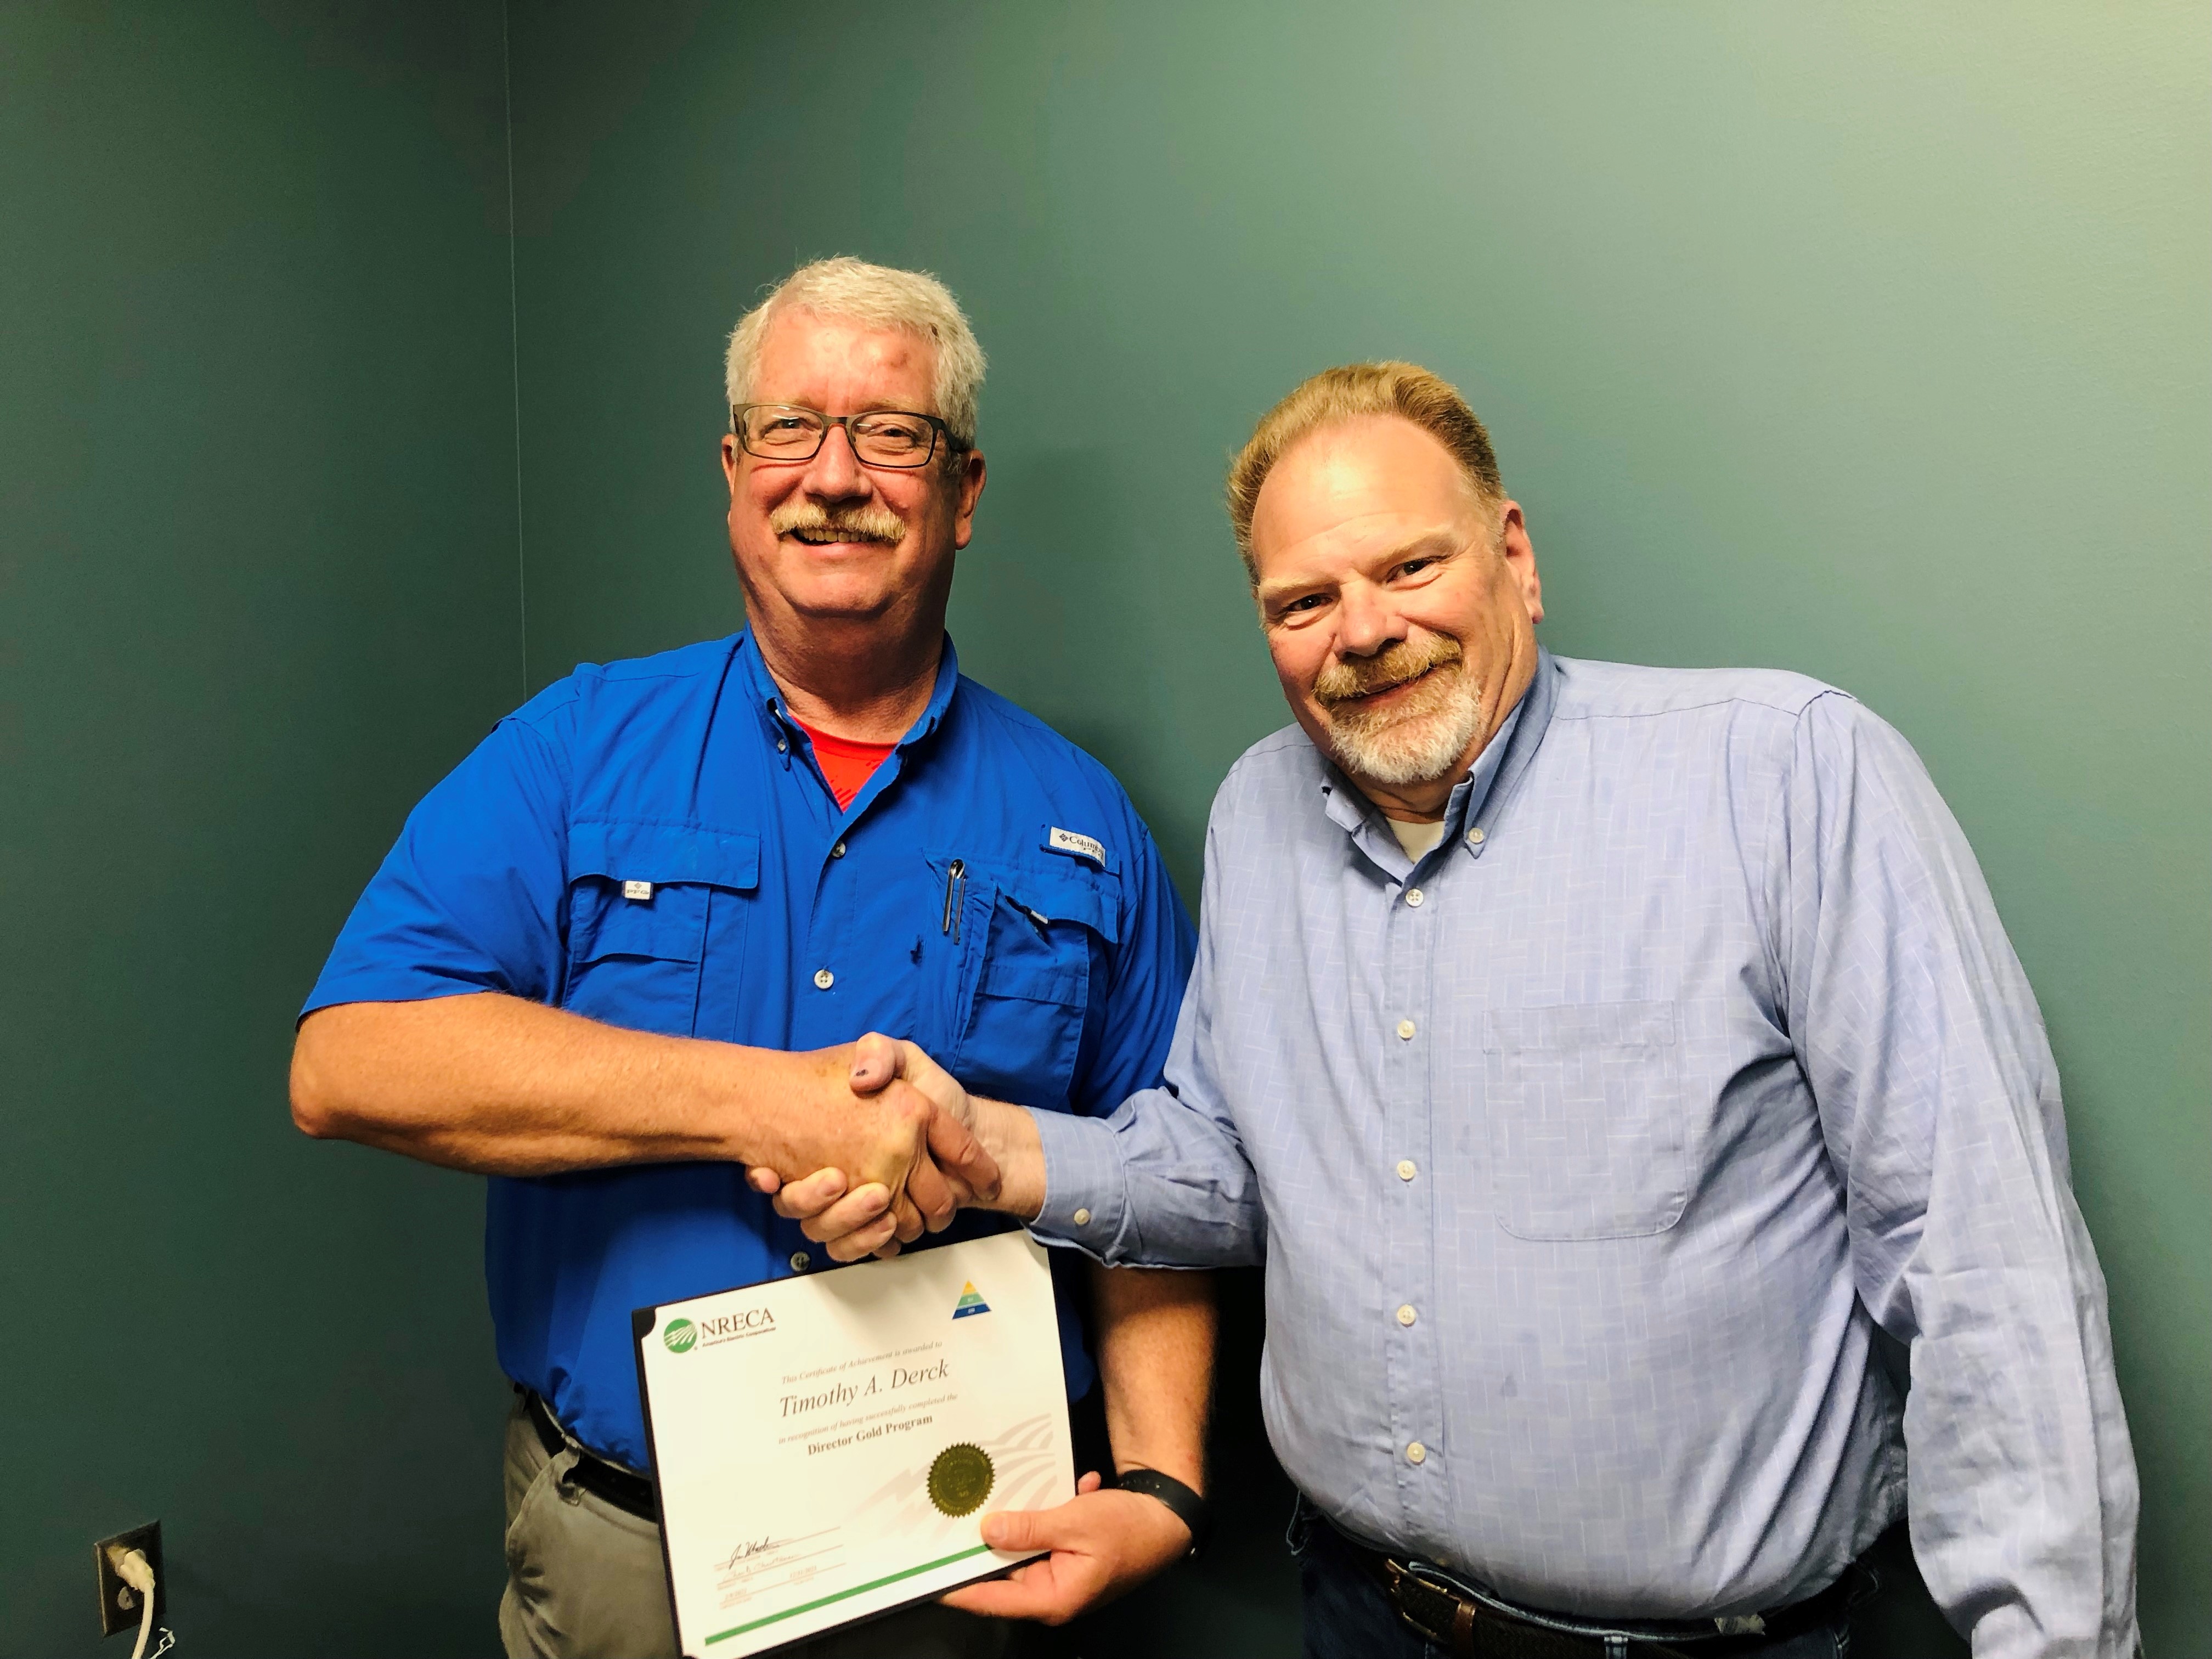 Tim receives his NRECA Director Gold Certificate